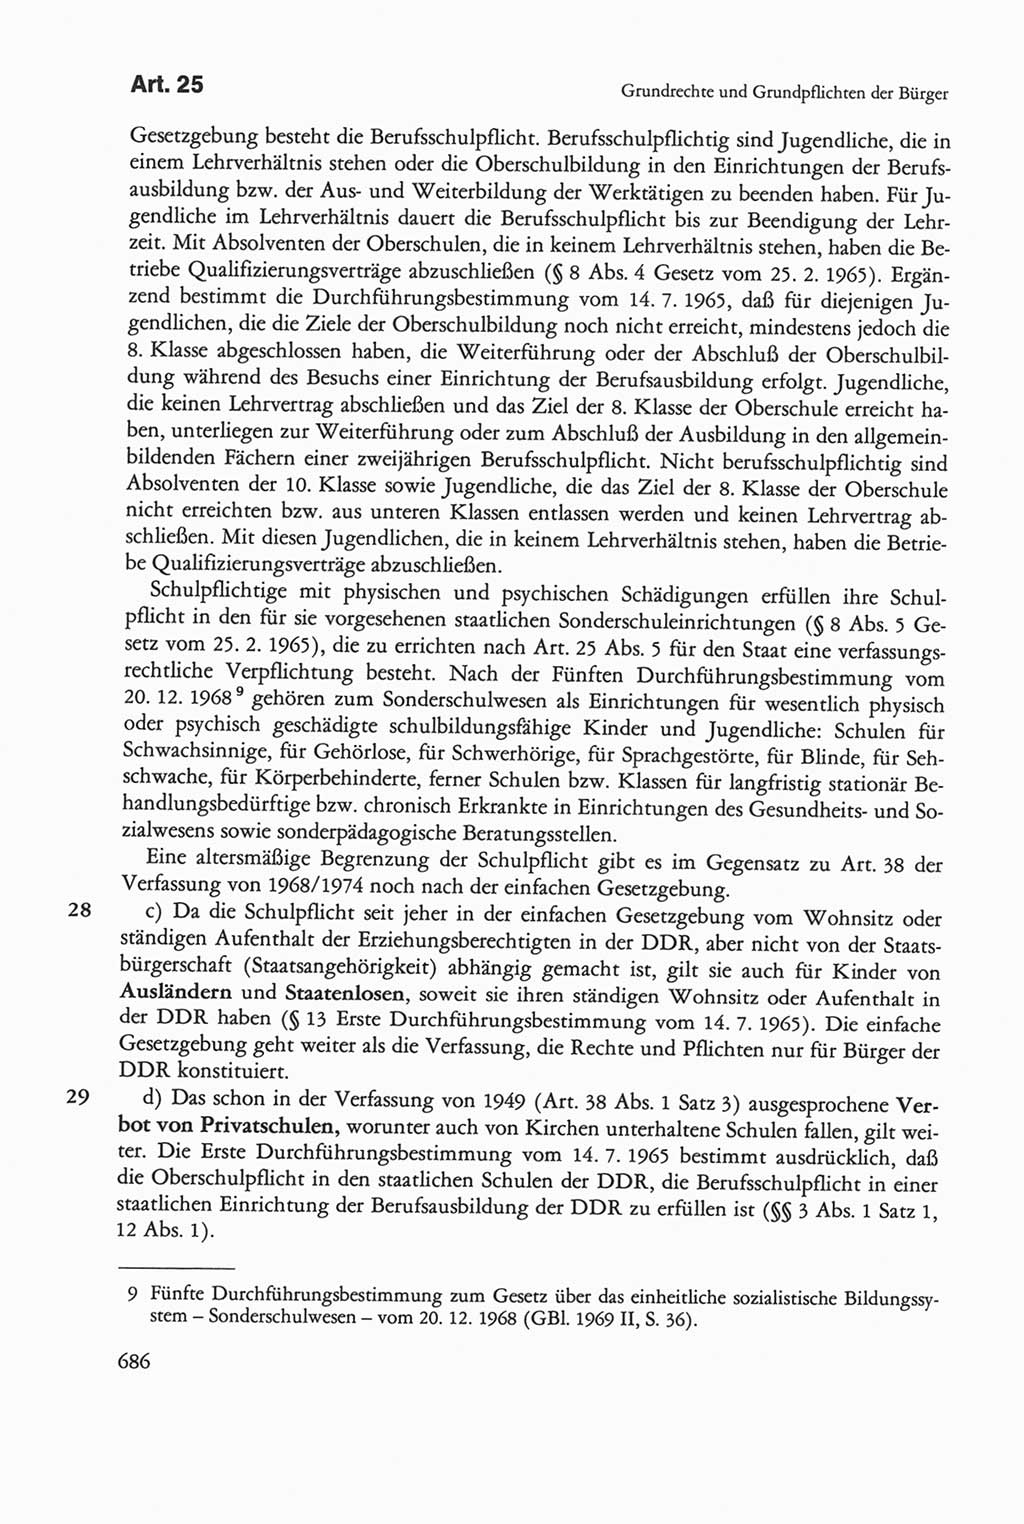 Die sozialistische Verfassung der Deutschen Demokratischen Republik (DDR), Kommentar mit einem Nachtrag 1997, Seite 686 (Soz. Verf. DDR Komm. Nachtr. 1997, S. 686)